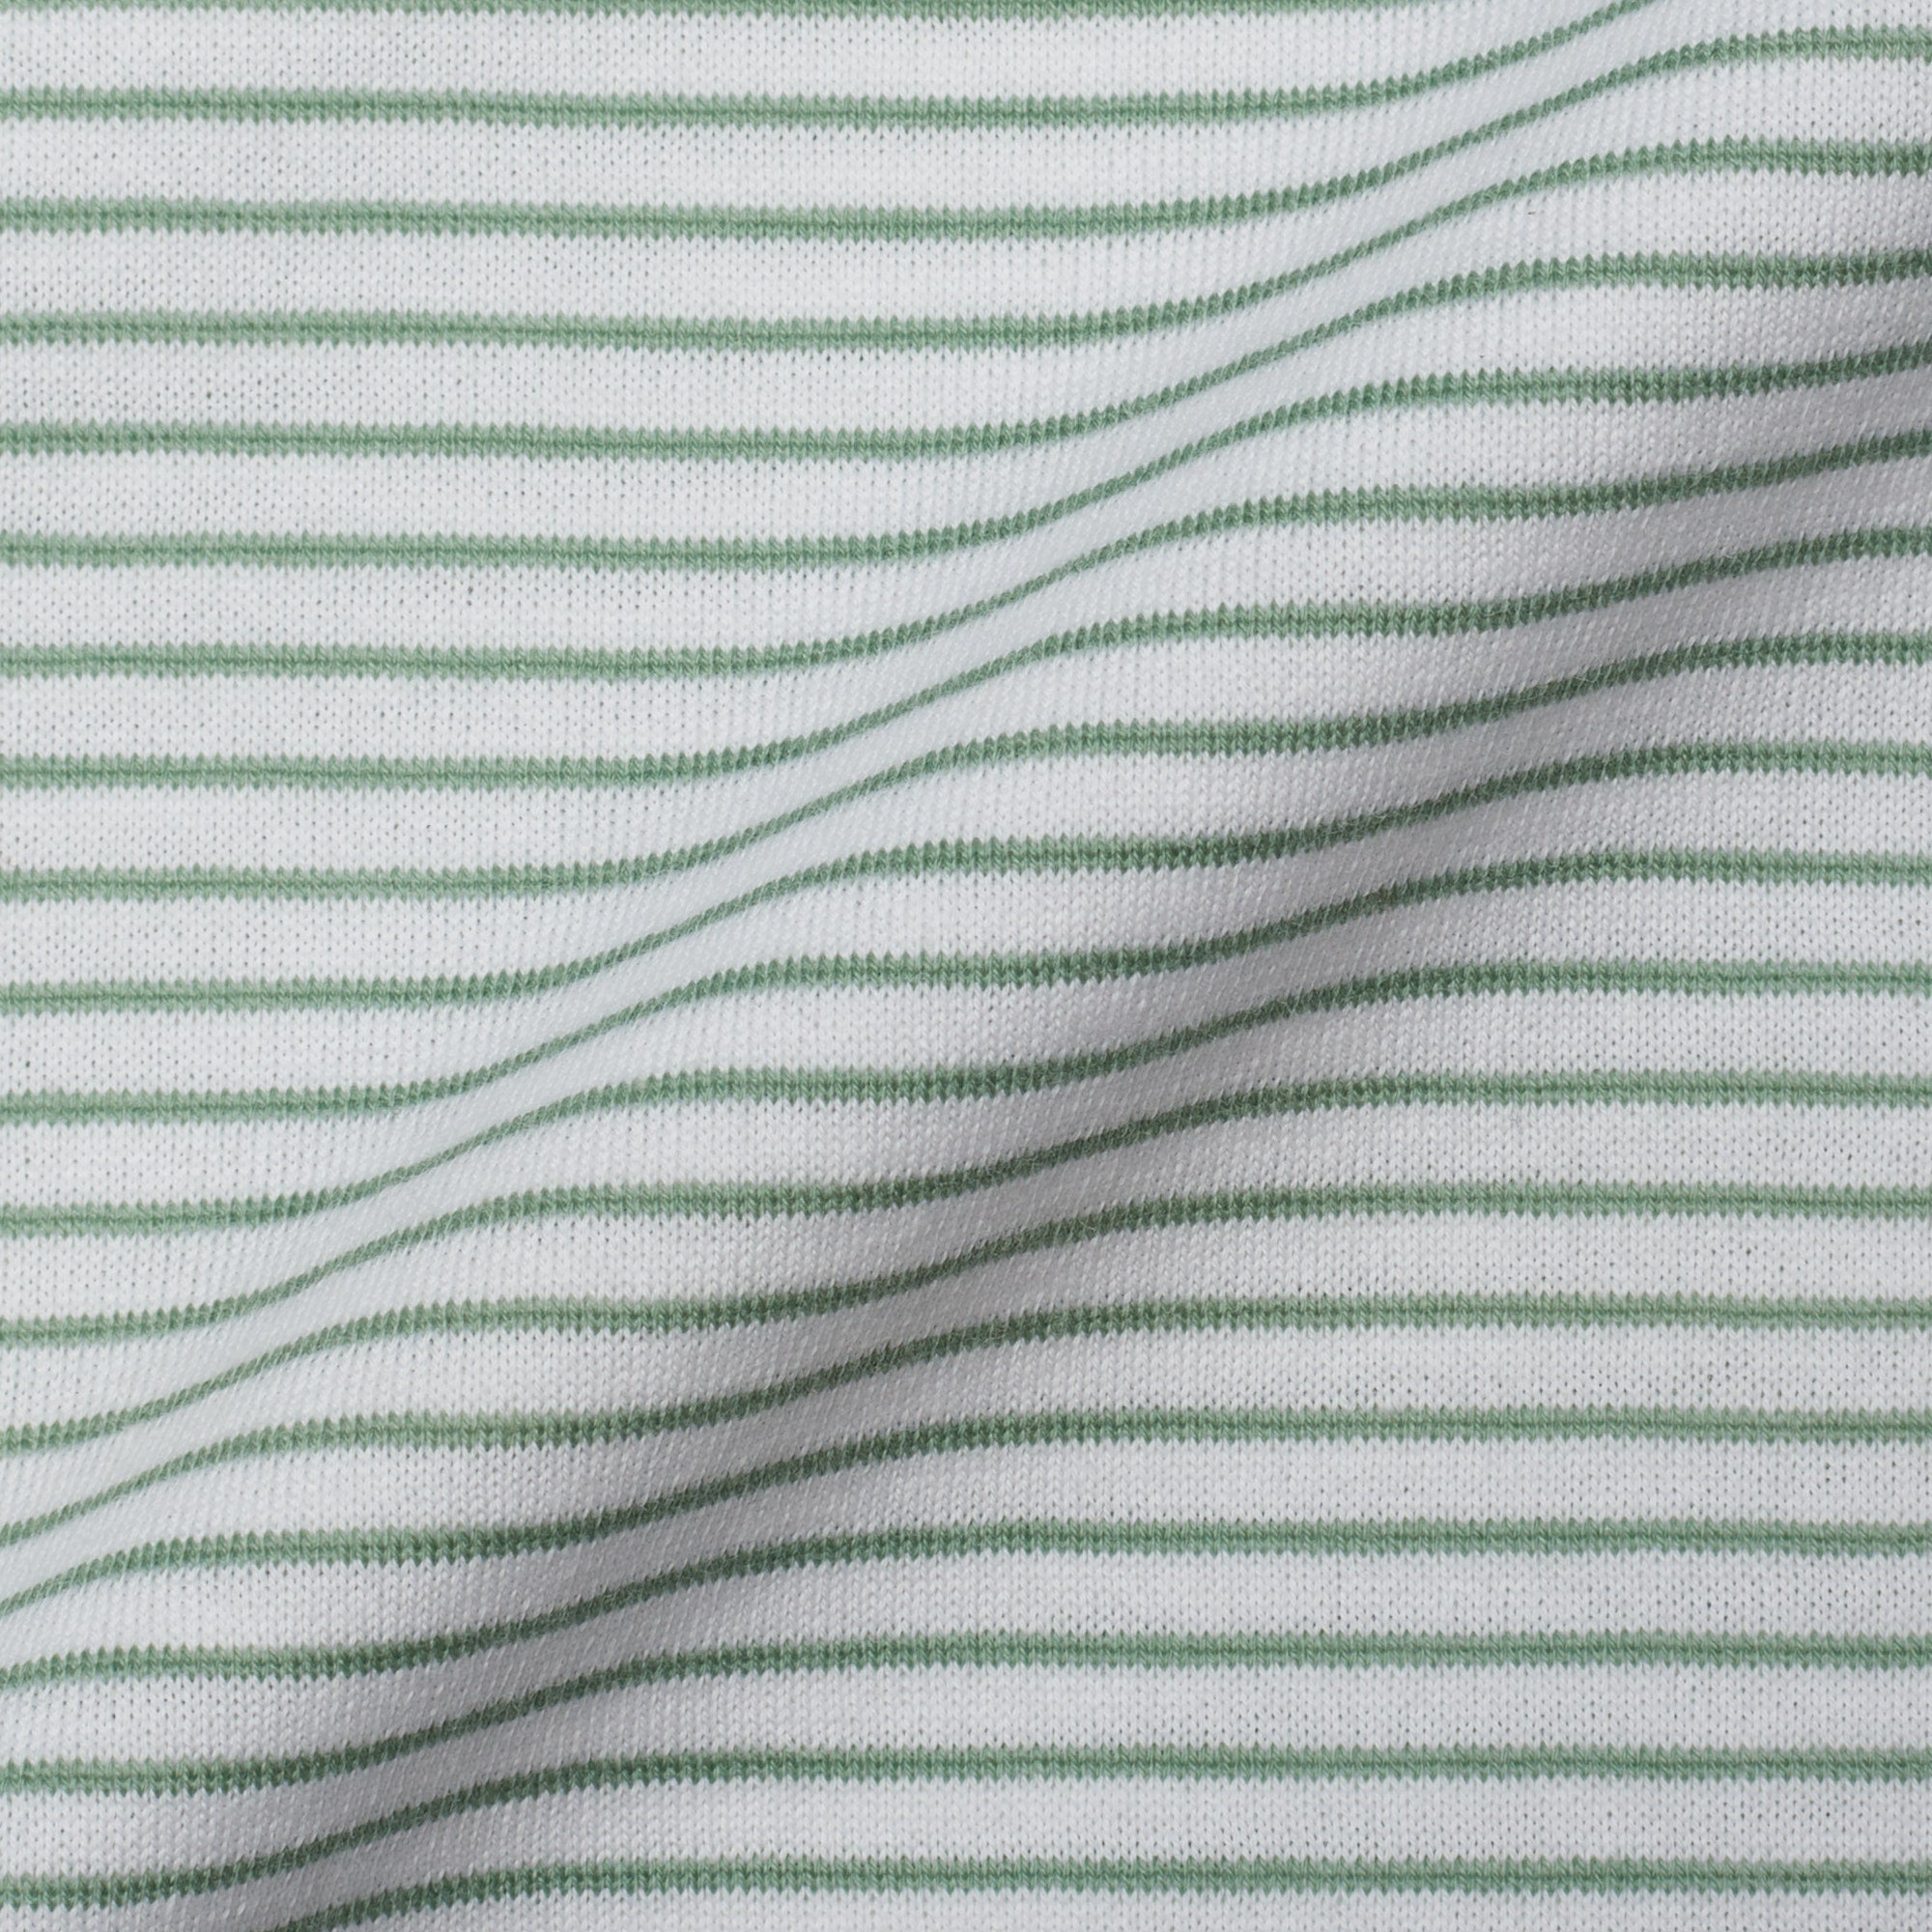 FEDELI "Libeccio" Green Striped Cotton Jersey Long Sleeve Polo Shirt EU 60 NEW US 4XL